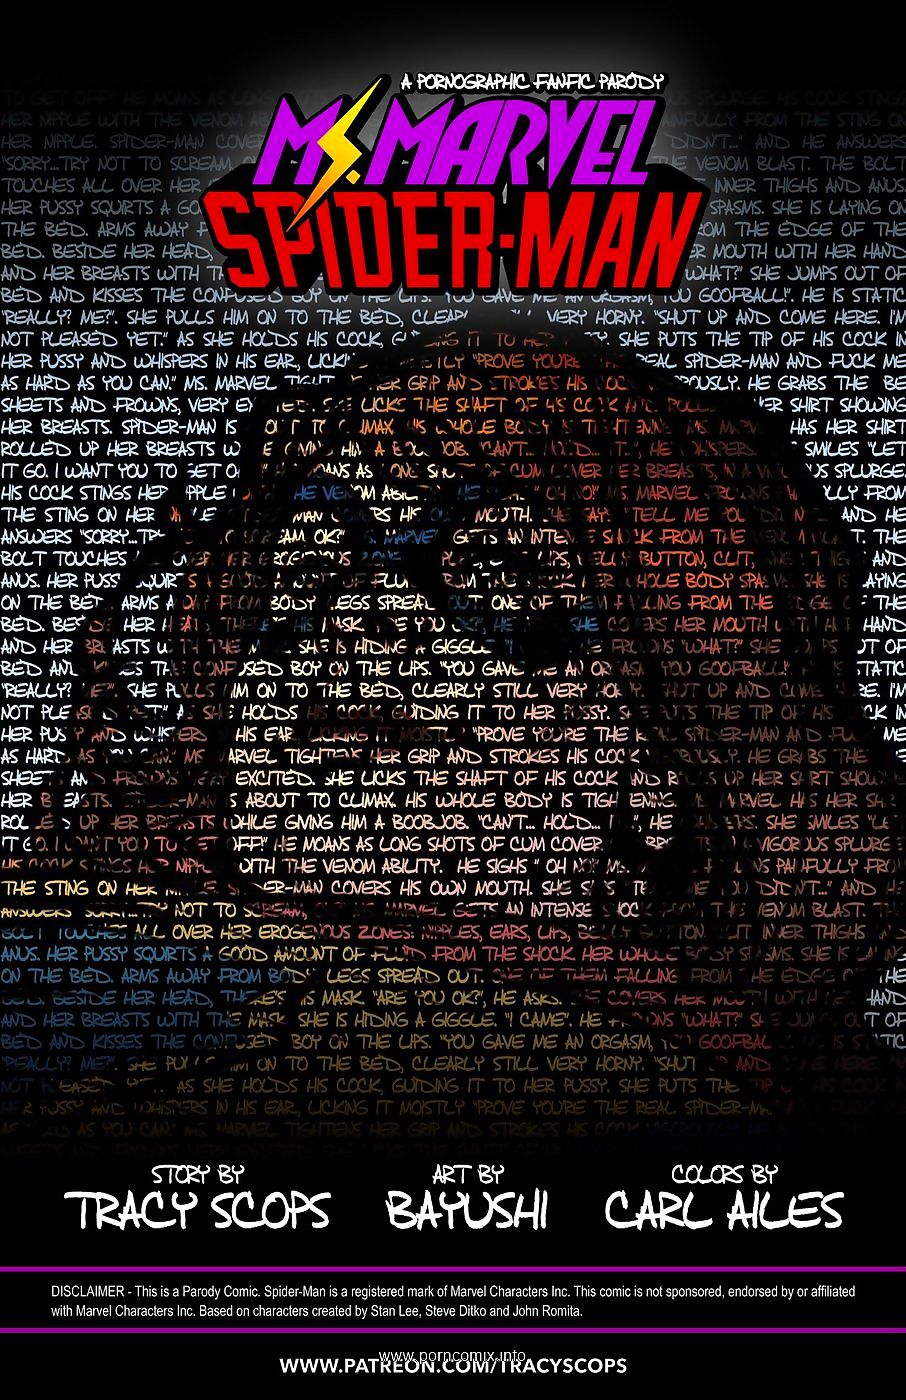 Missen Marvel spider man Tracy scops